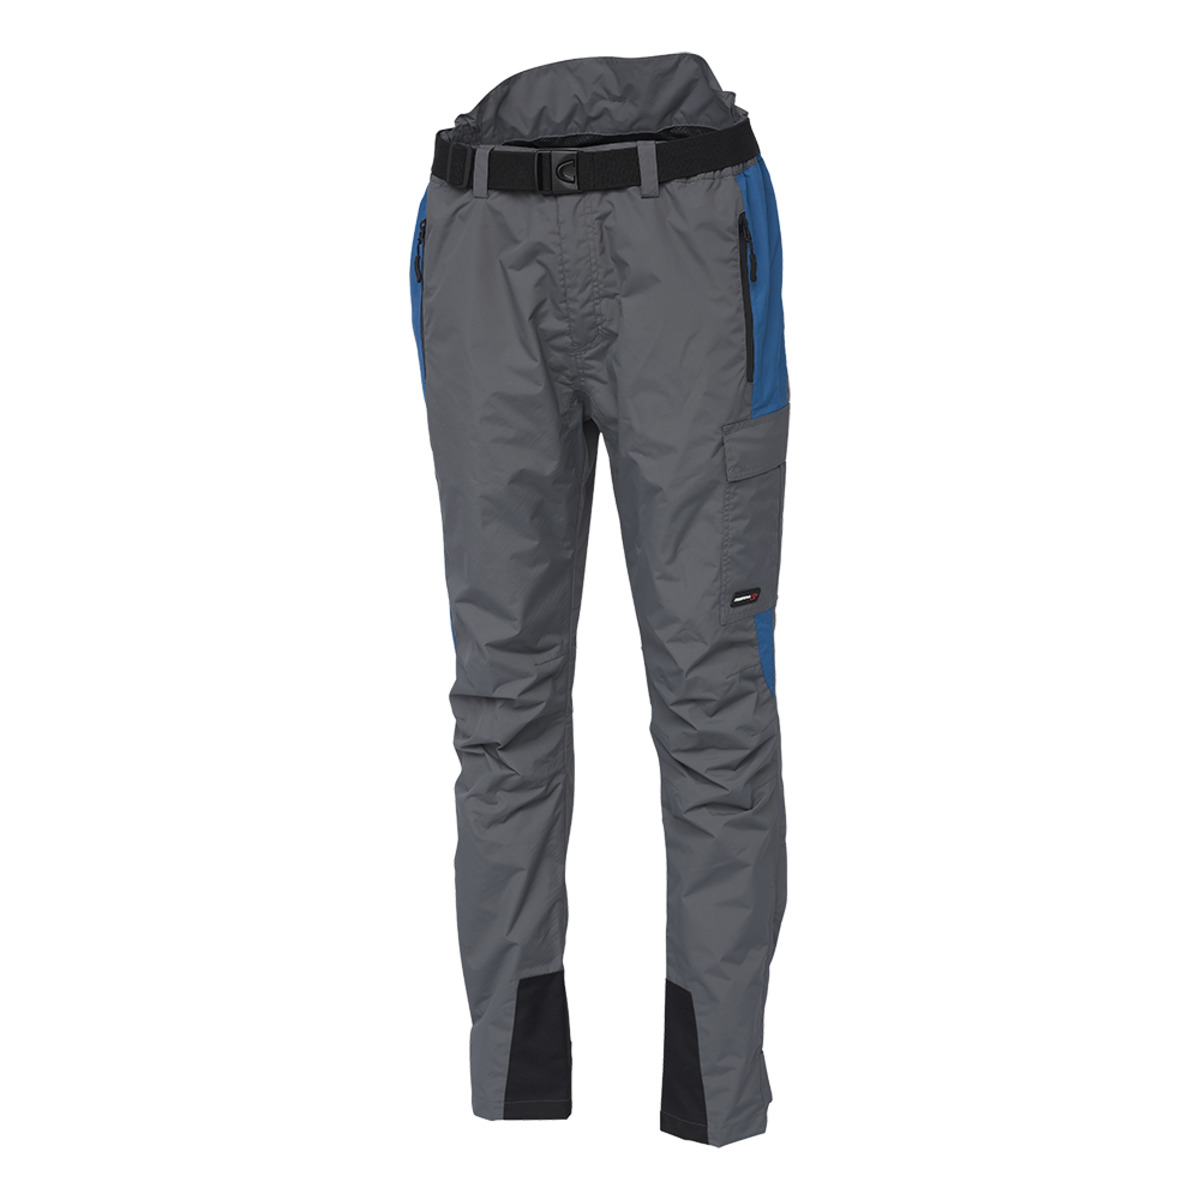 Scierra Helmsdale Fishing Trousers - M SEAPORT BLUE